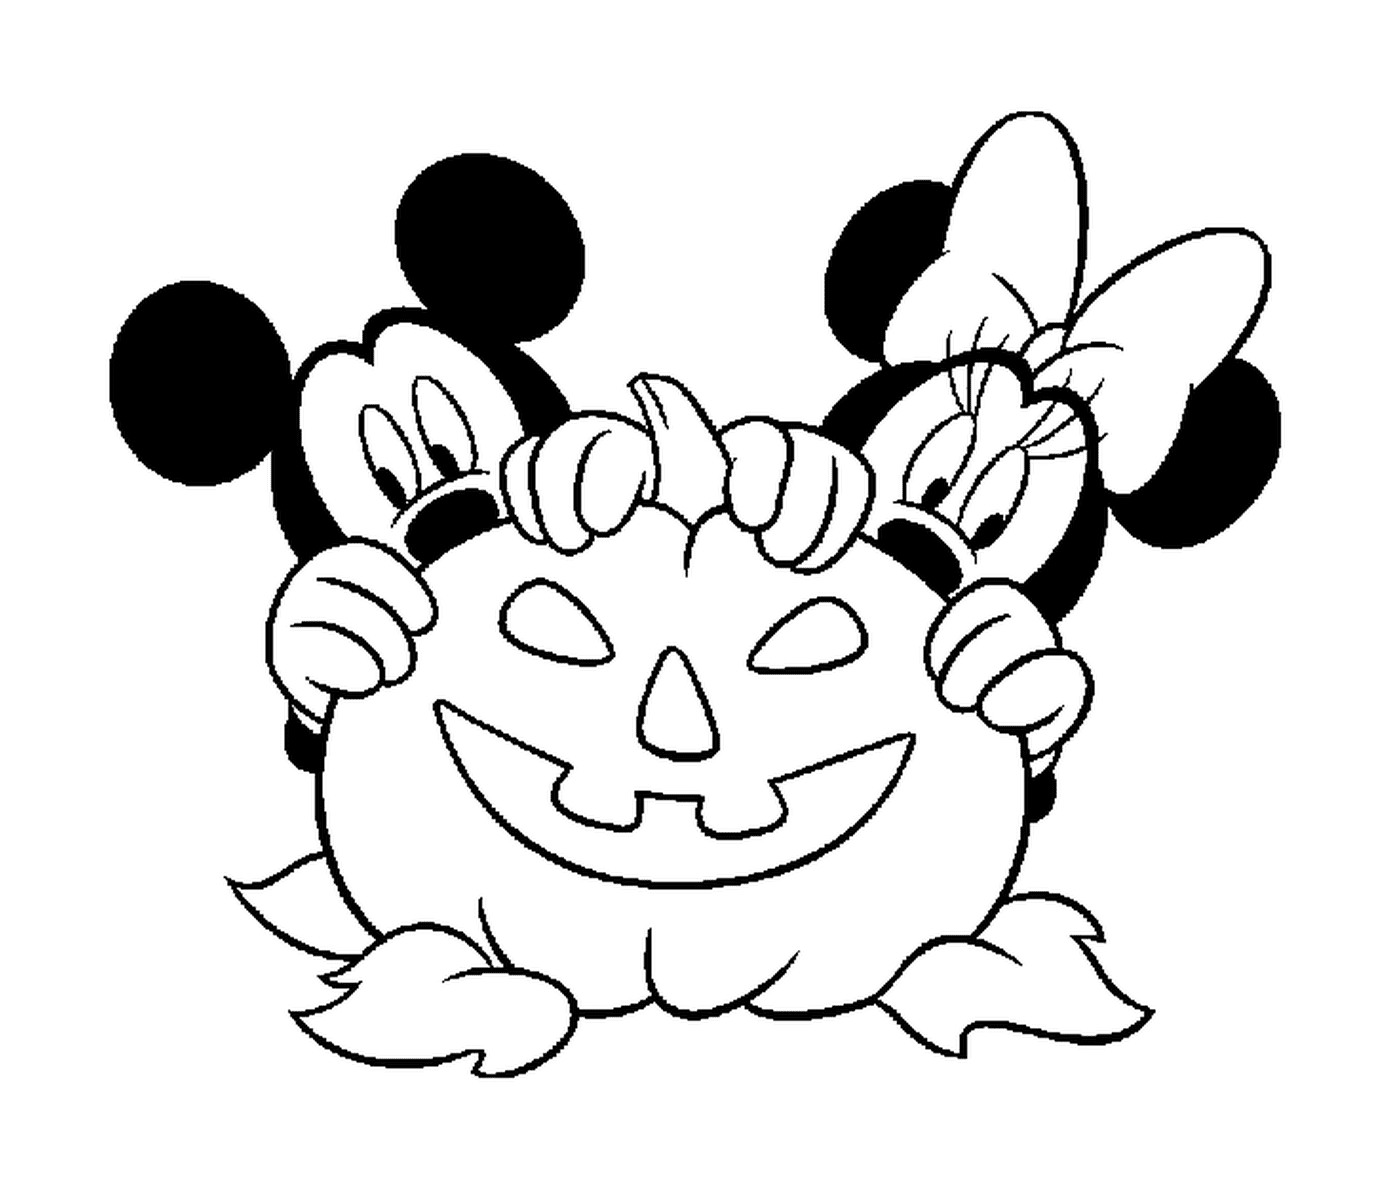  Mickey e Minnie si nascondono dietro una zucca Disney 